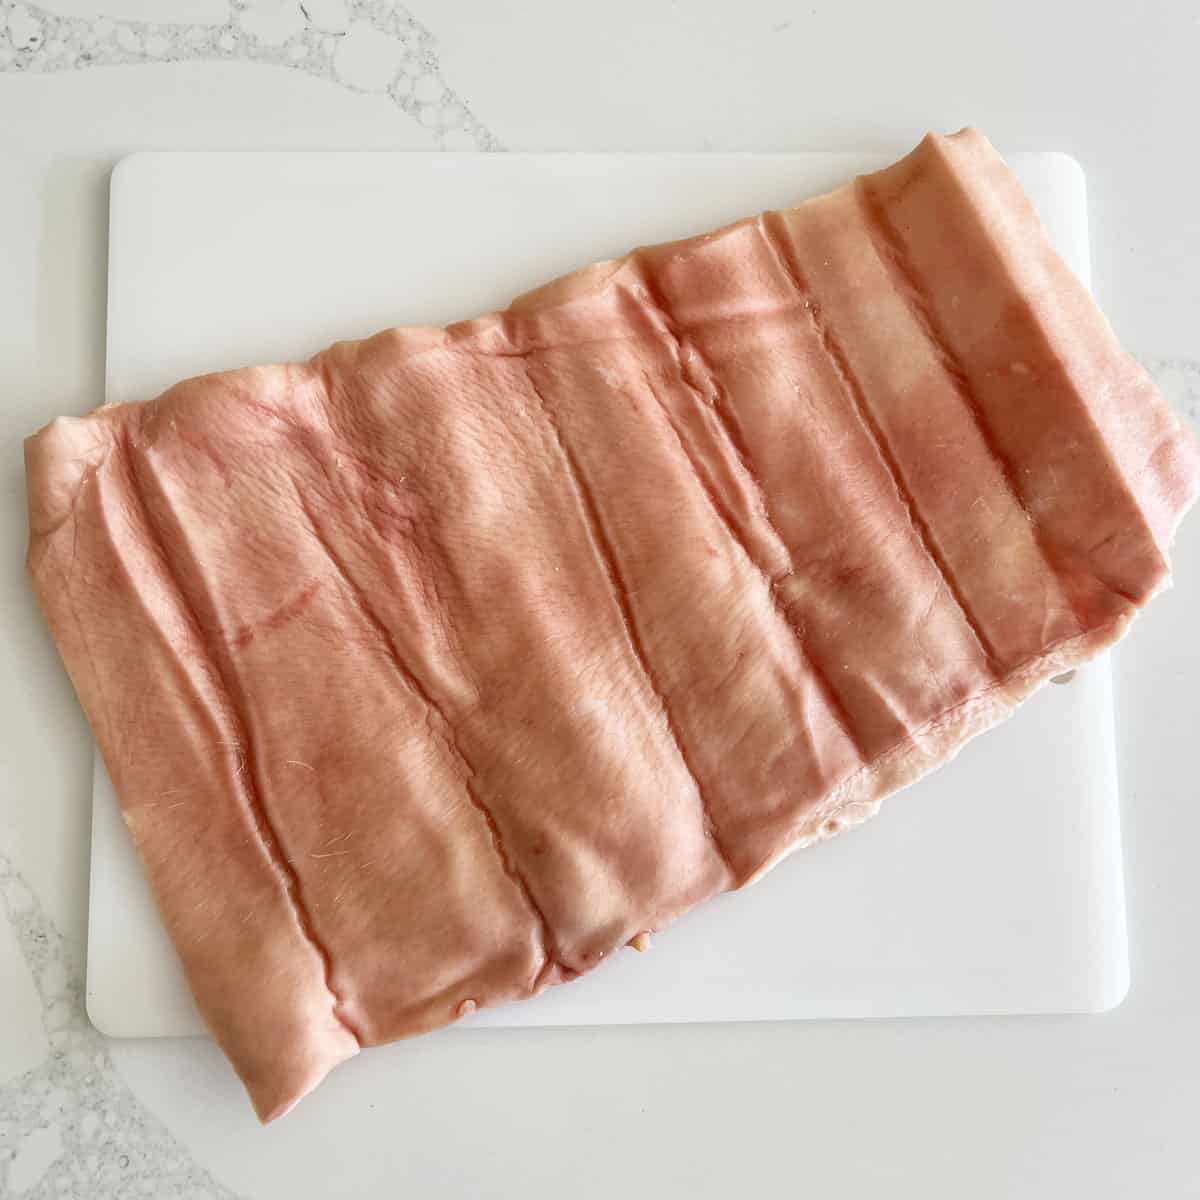 Pork skin on a cutting board.